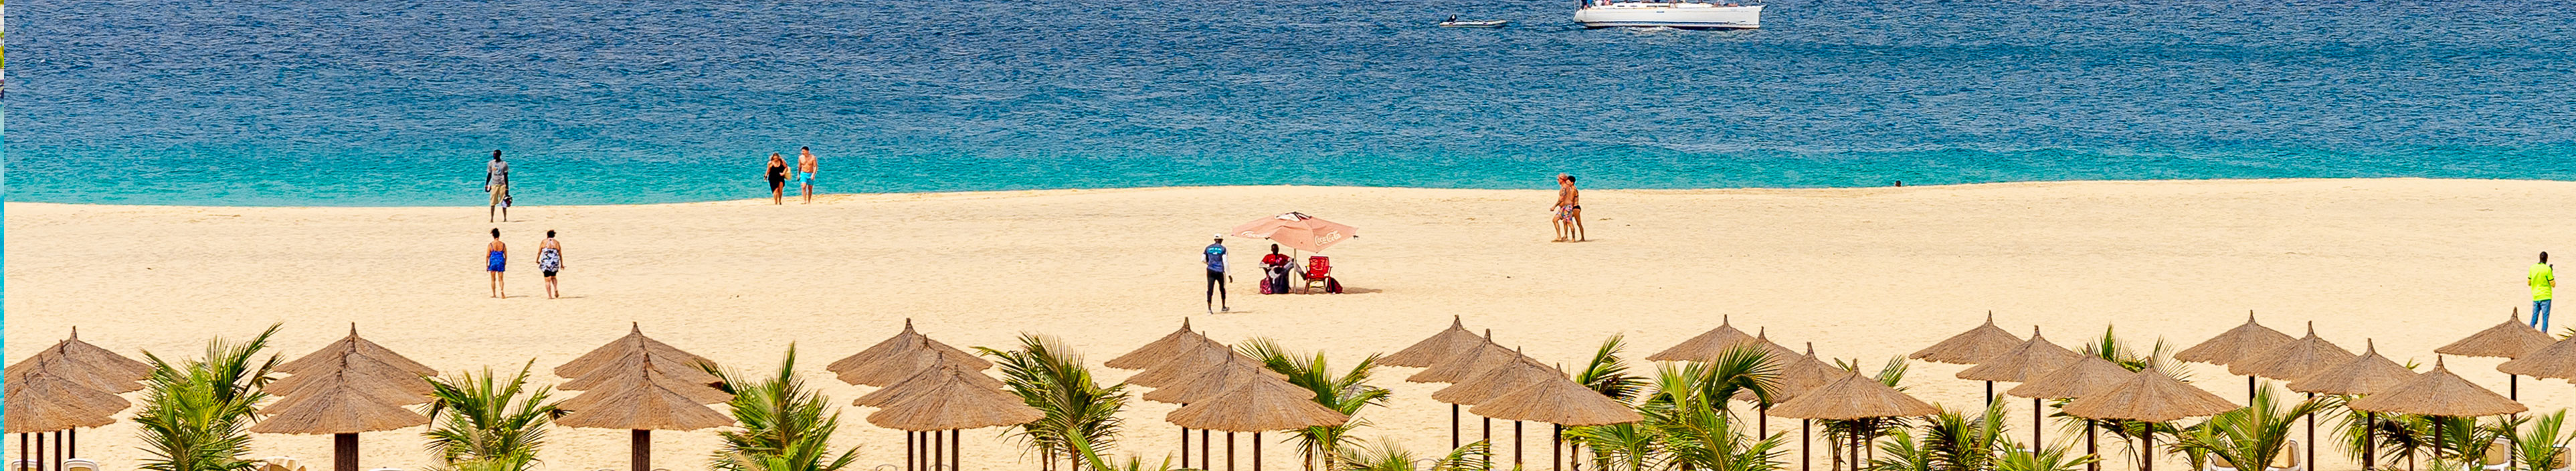 Sonnenschirme und Liegen am Strand auf den Kapverden.